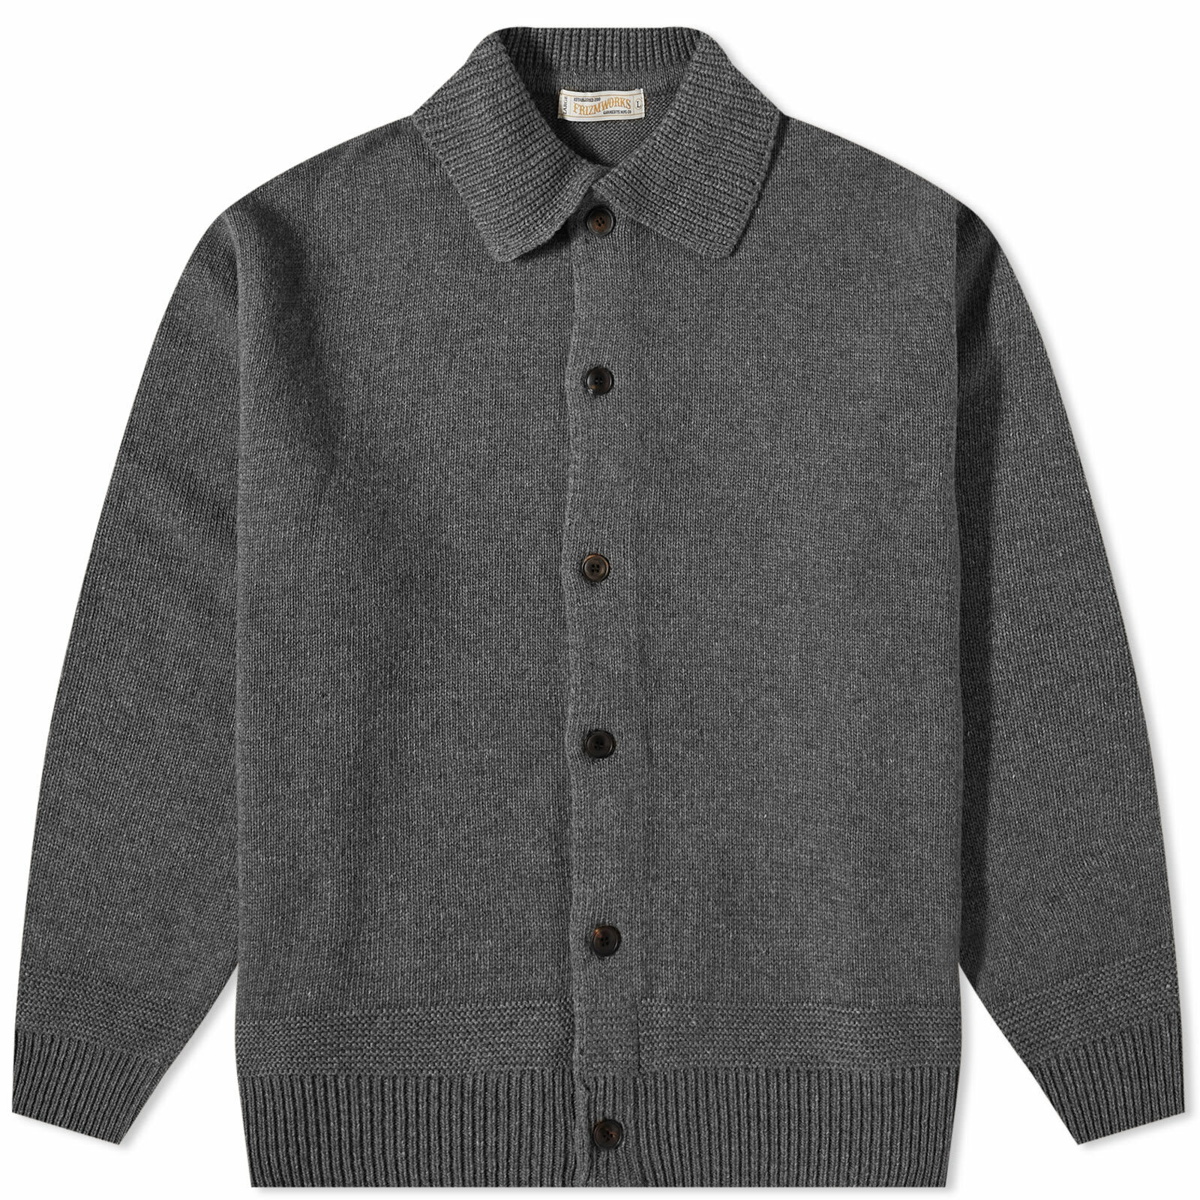 FrizmWORKS Men's Wool Knit Cardigan Jacket in Charcoal FrizmWORKS